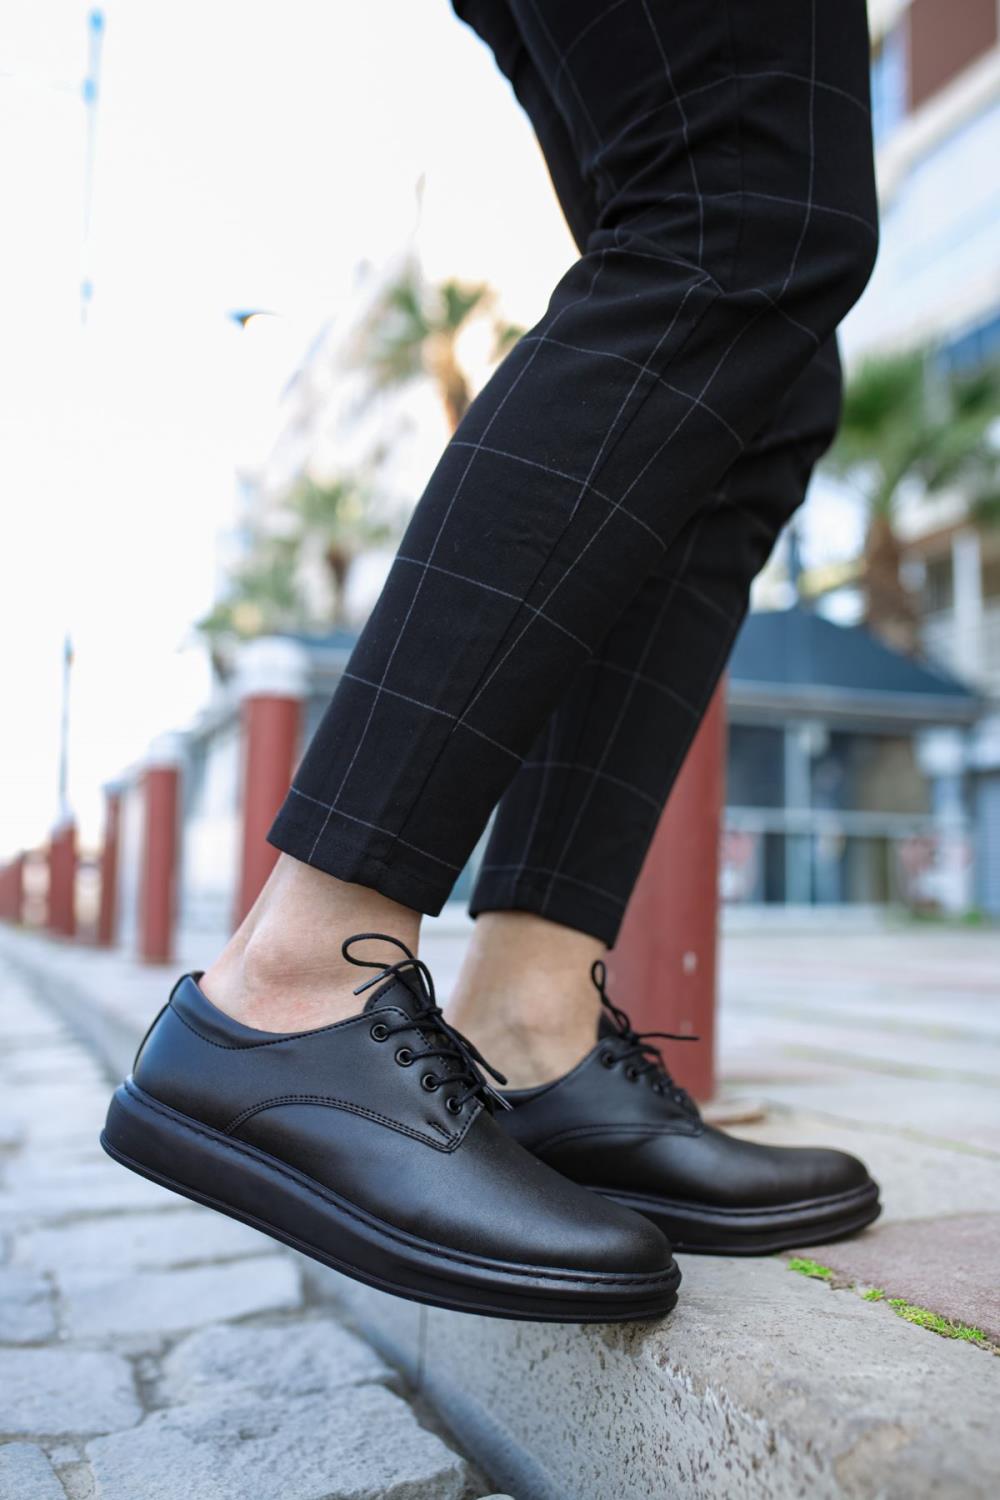 CLZ941  Klasik Erkek Ayakkabı  Siyah (Siyah Taban)